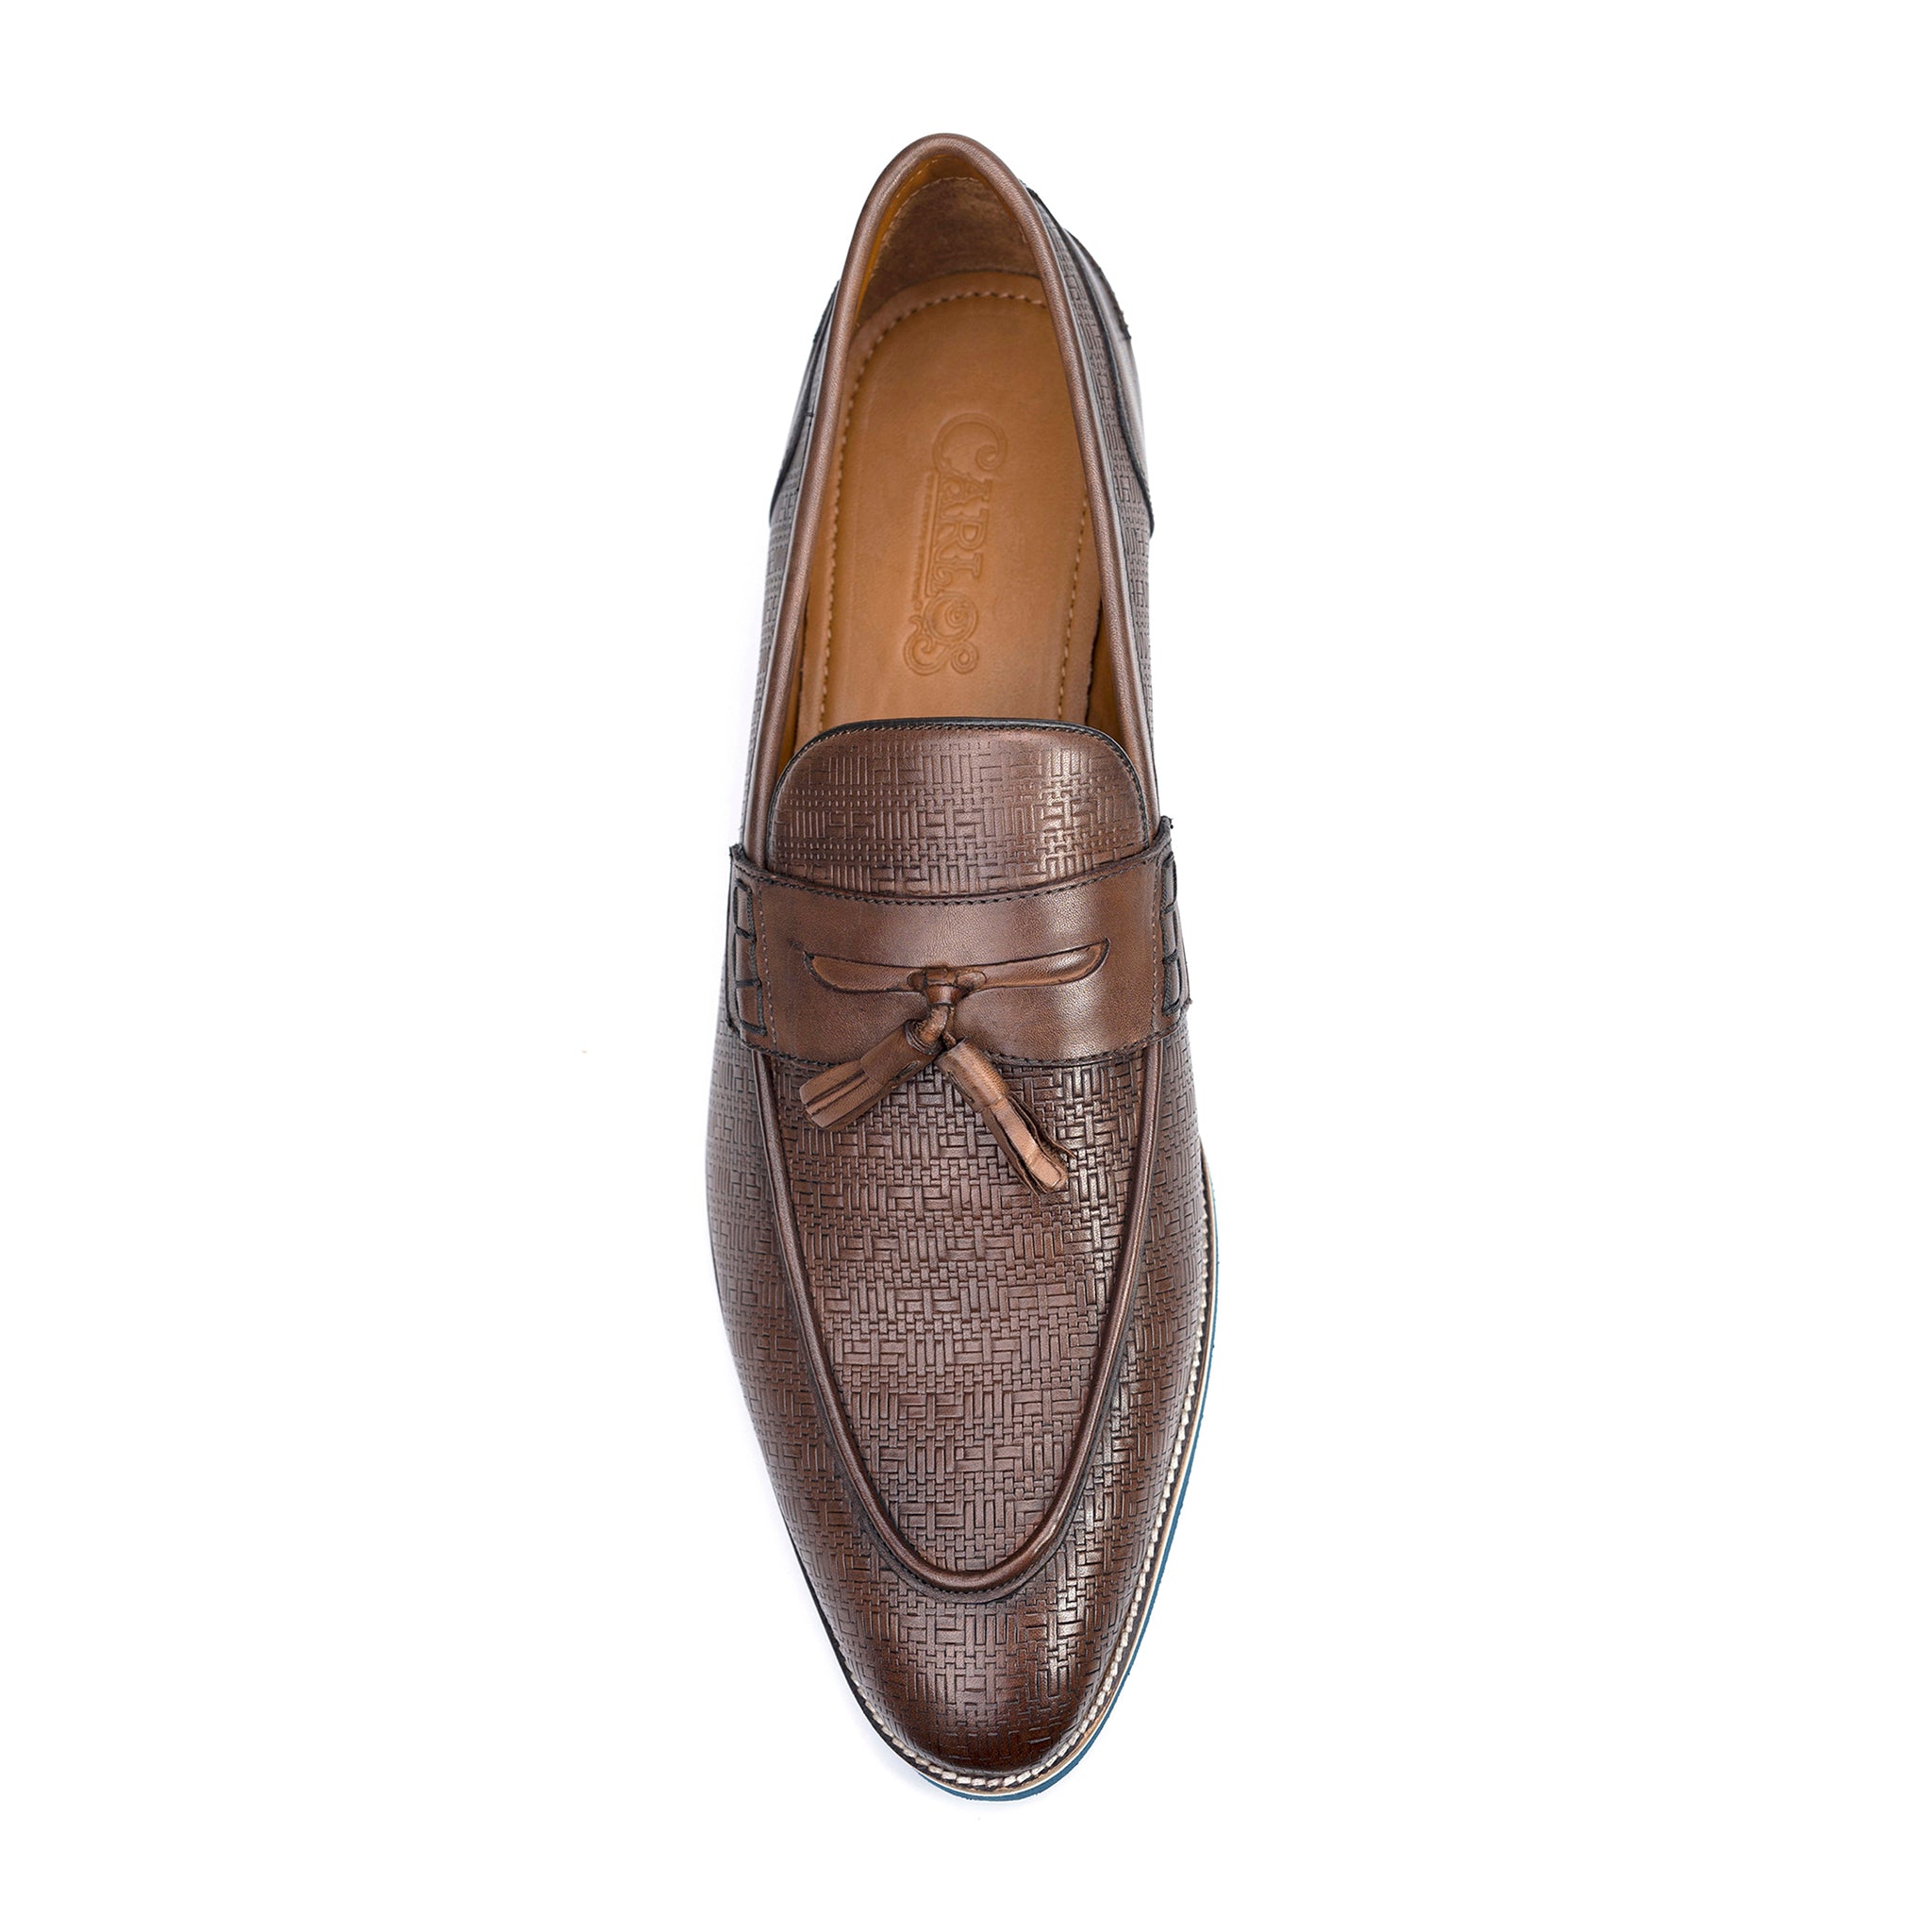 Garcia Tassel Loafer shoes brown